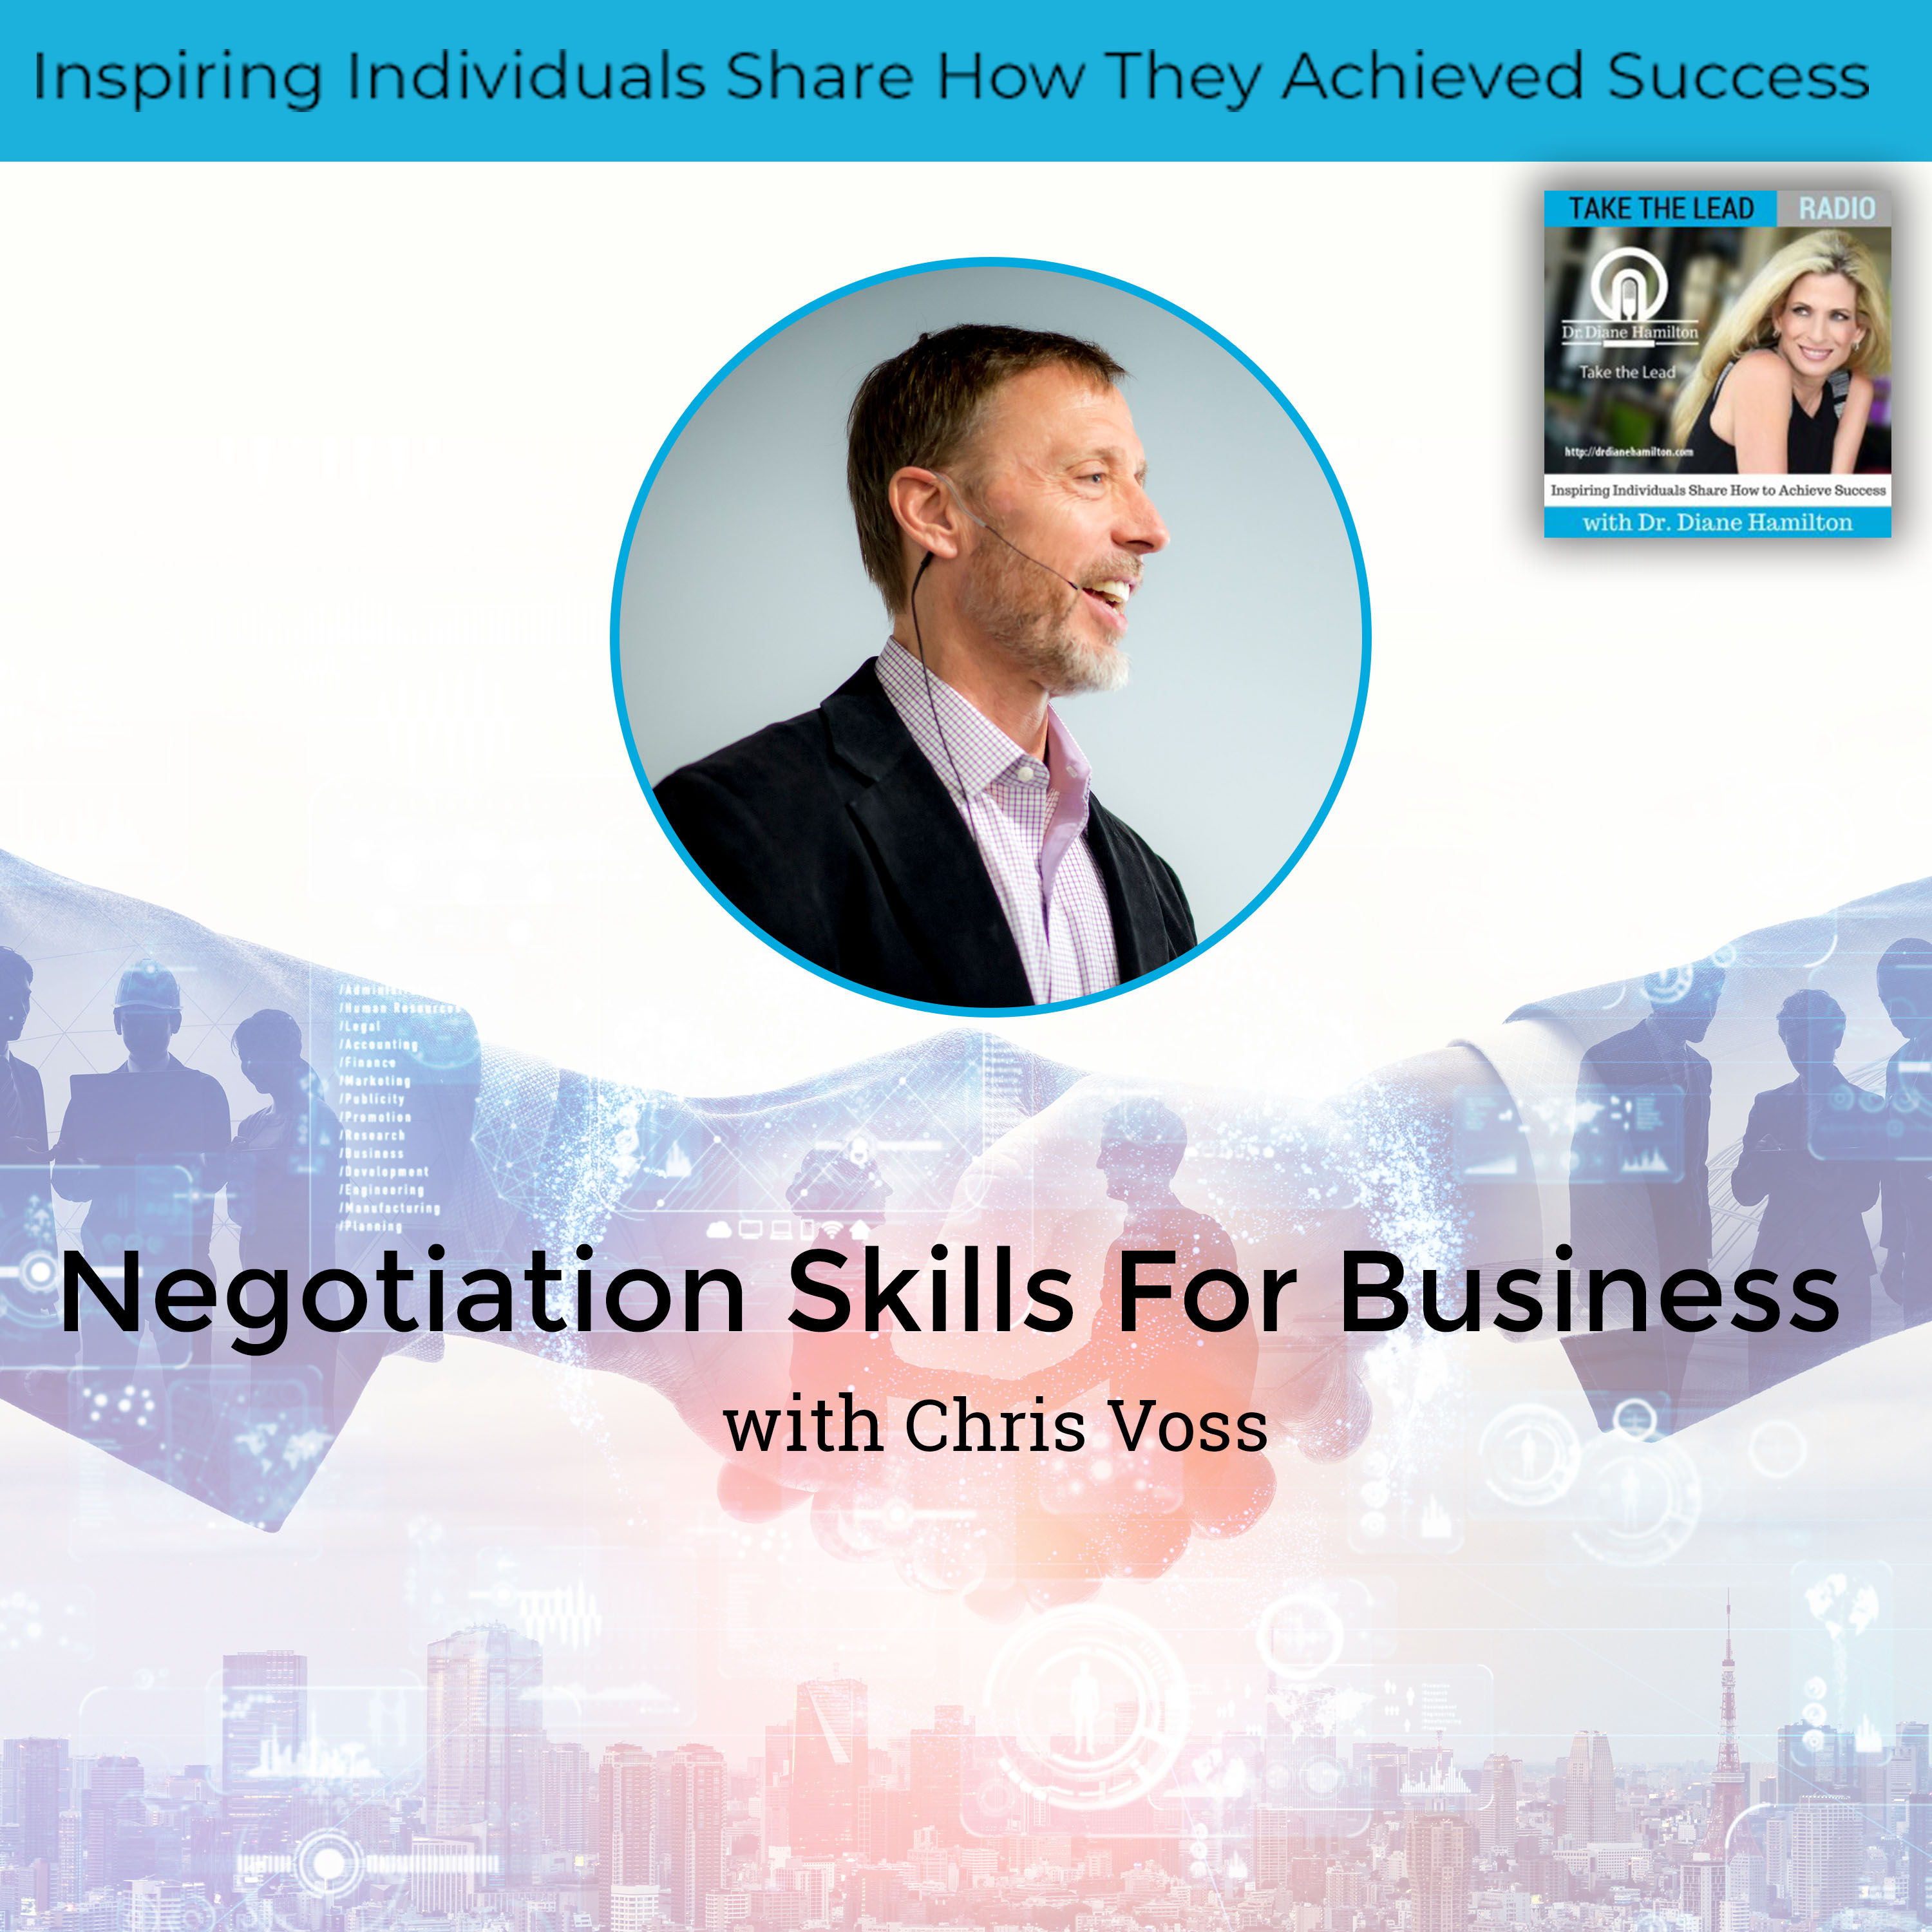 Video: Keynote Virtual Speaker Chris Voss: Negotiate